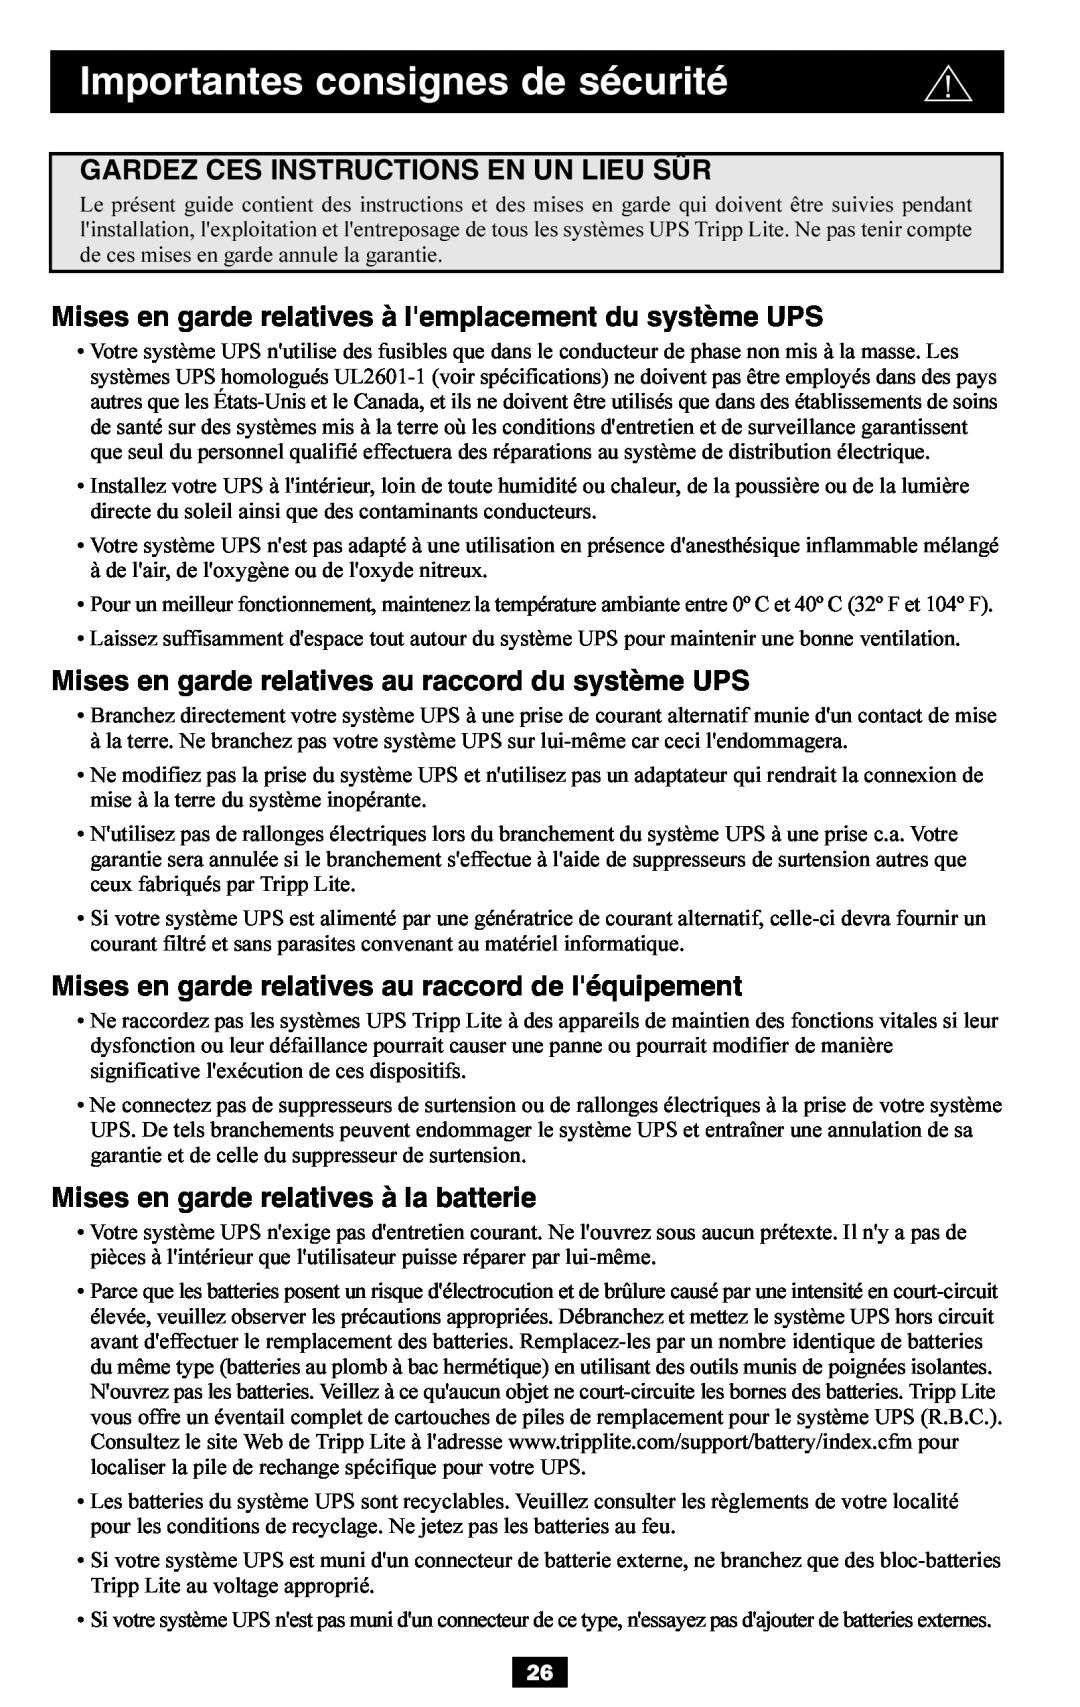 Tripp Lite BP36V27 Gardez Ces Instructions En Un Lieu Sûr, Mises en garde relatives à lemplacement du système UPS 